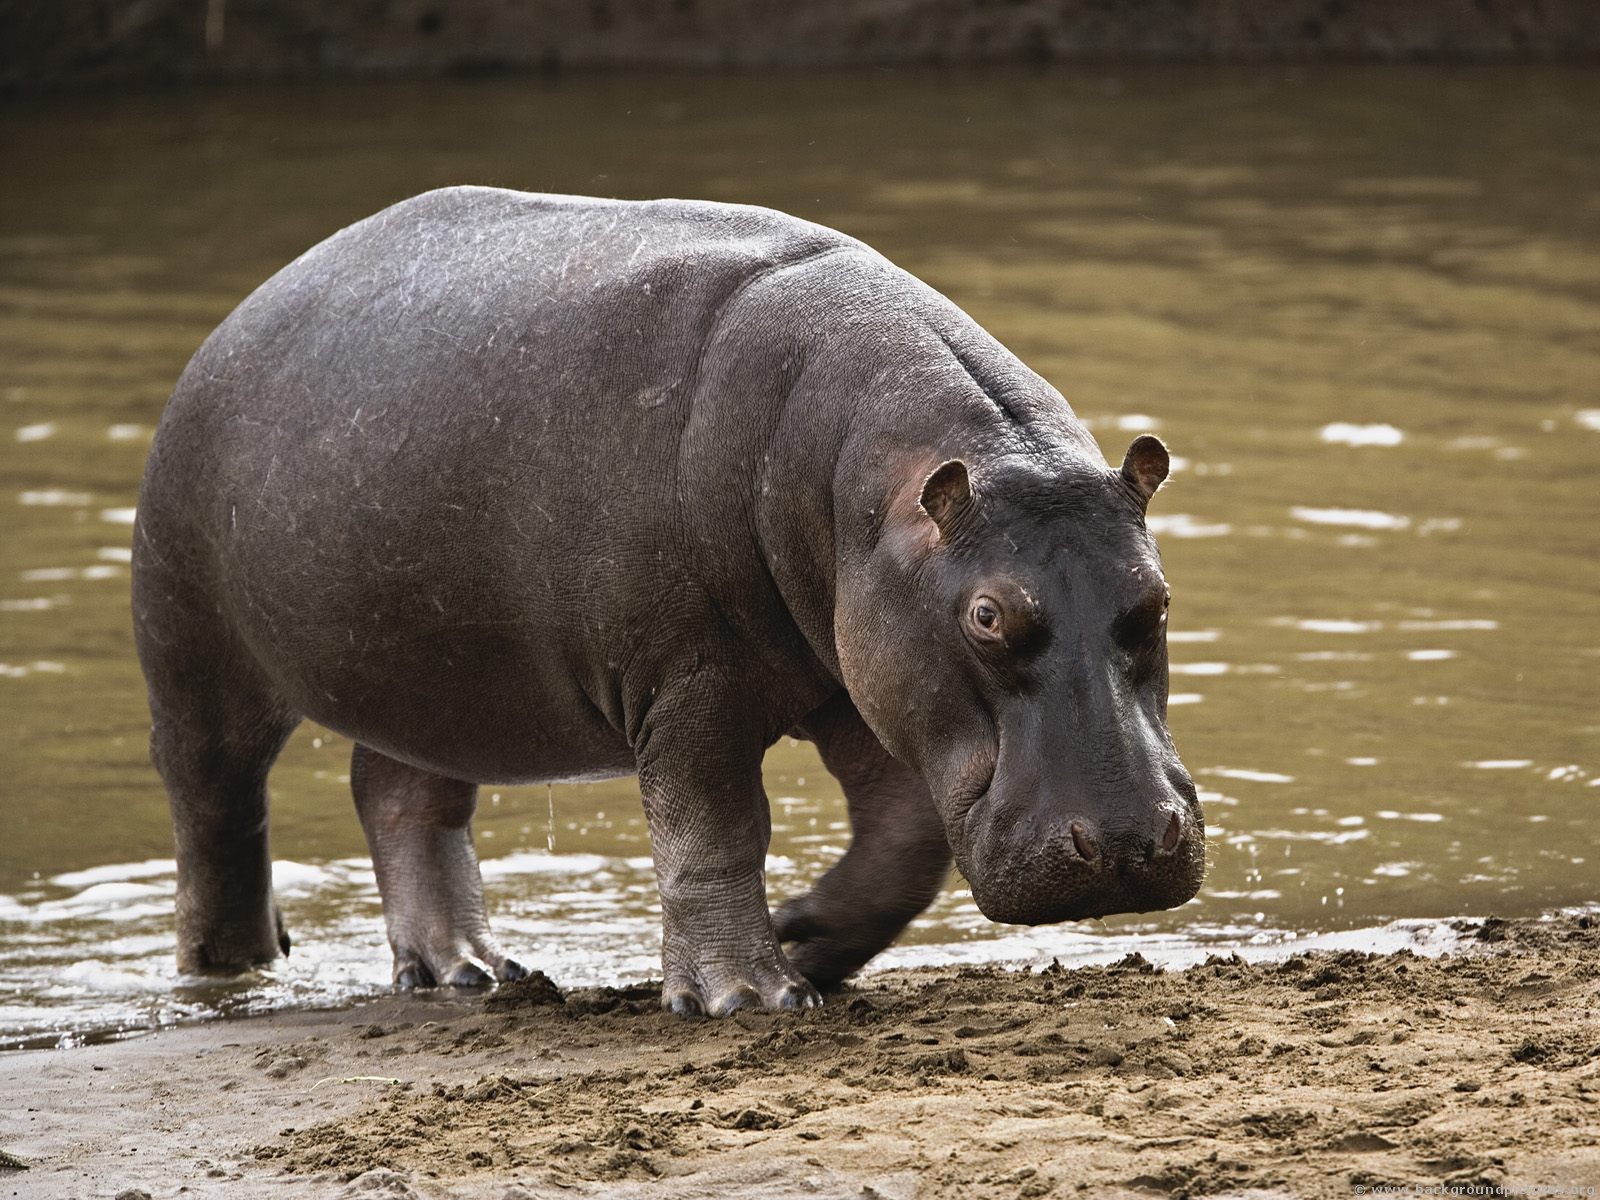 Hippo itsasertzean